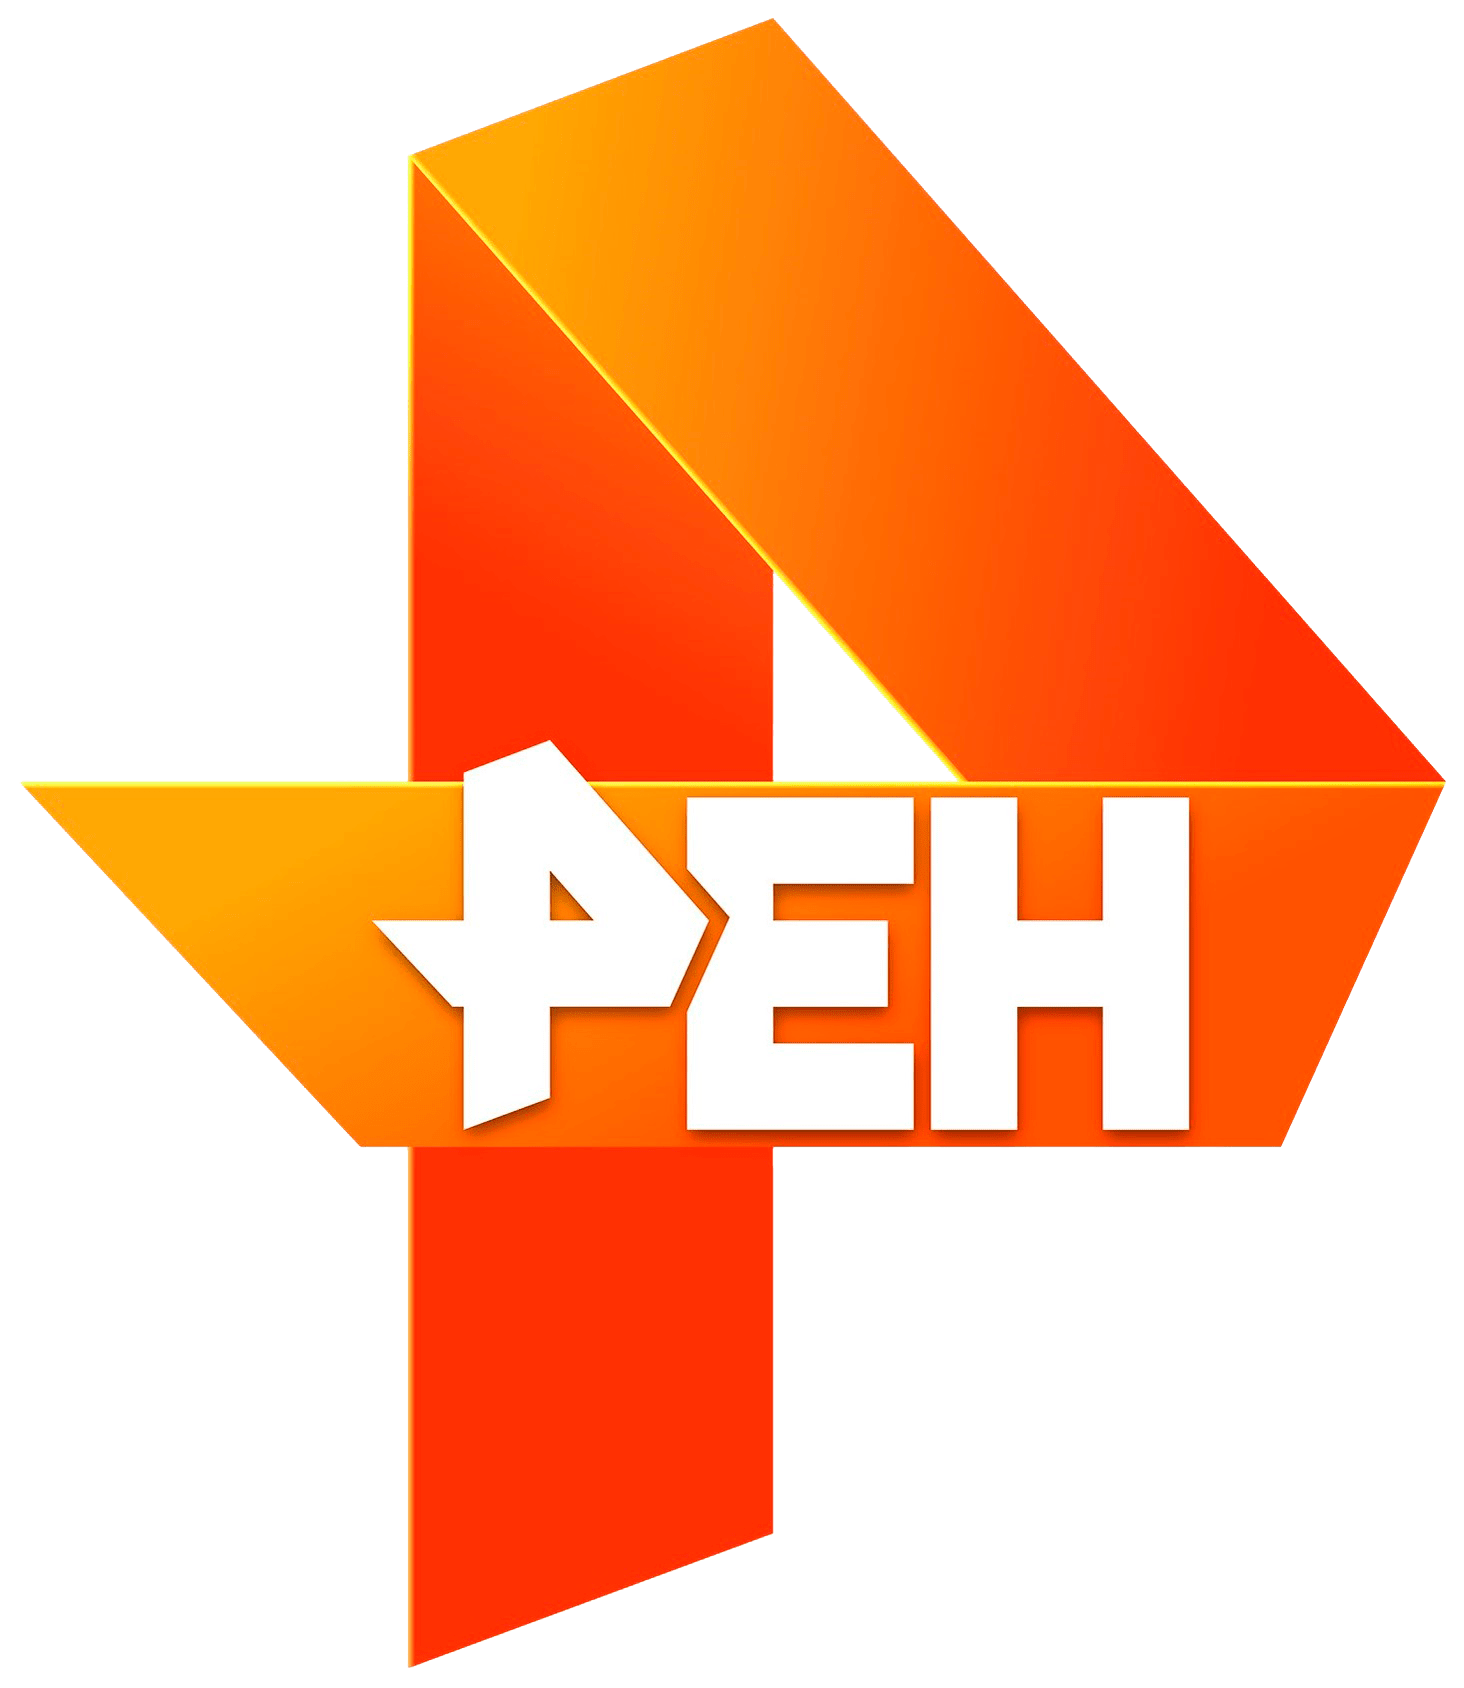 Раземщение рекламы РЕН ТВ, г. Иркутск